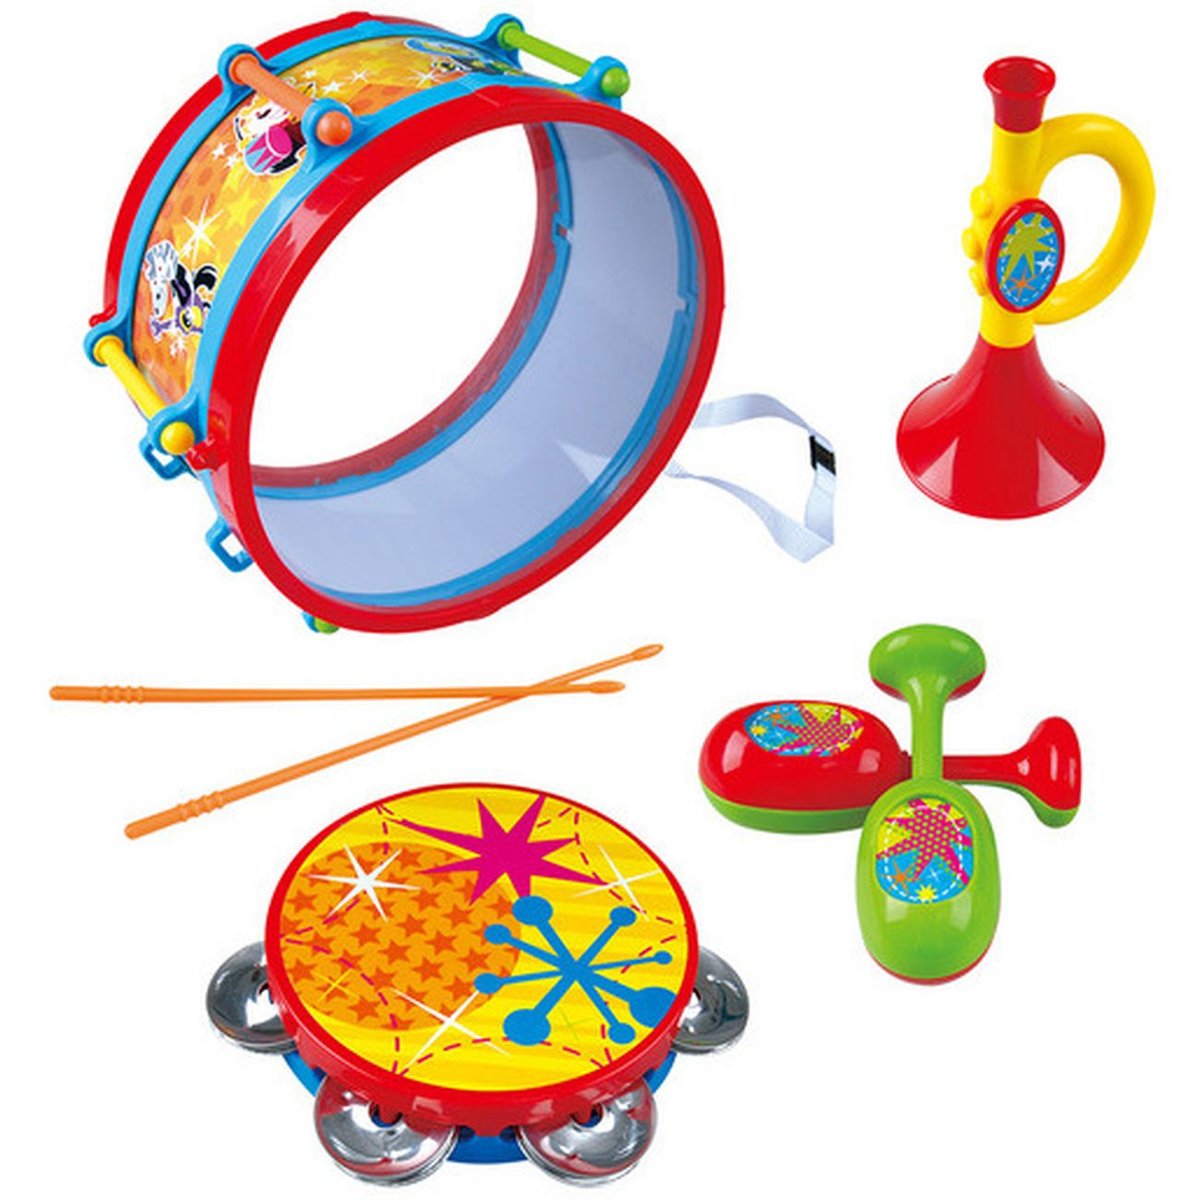 Hudební nástroje set KIDS METAL PARTY DRUM Playgo Toys Akce pouze do vyprodání zásob!